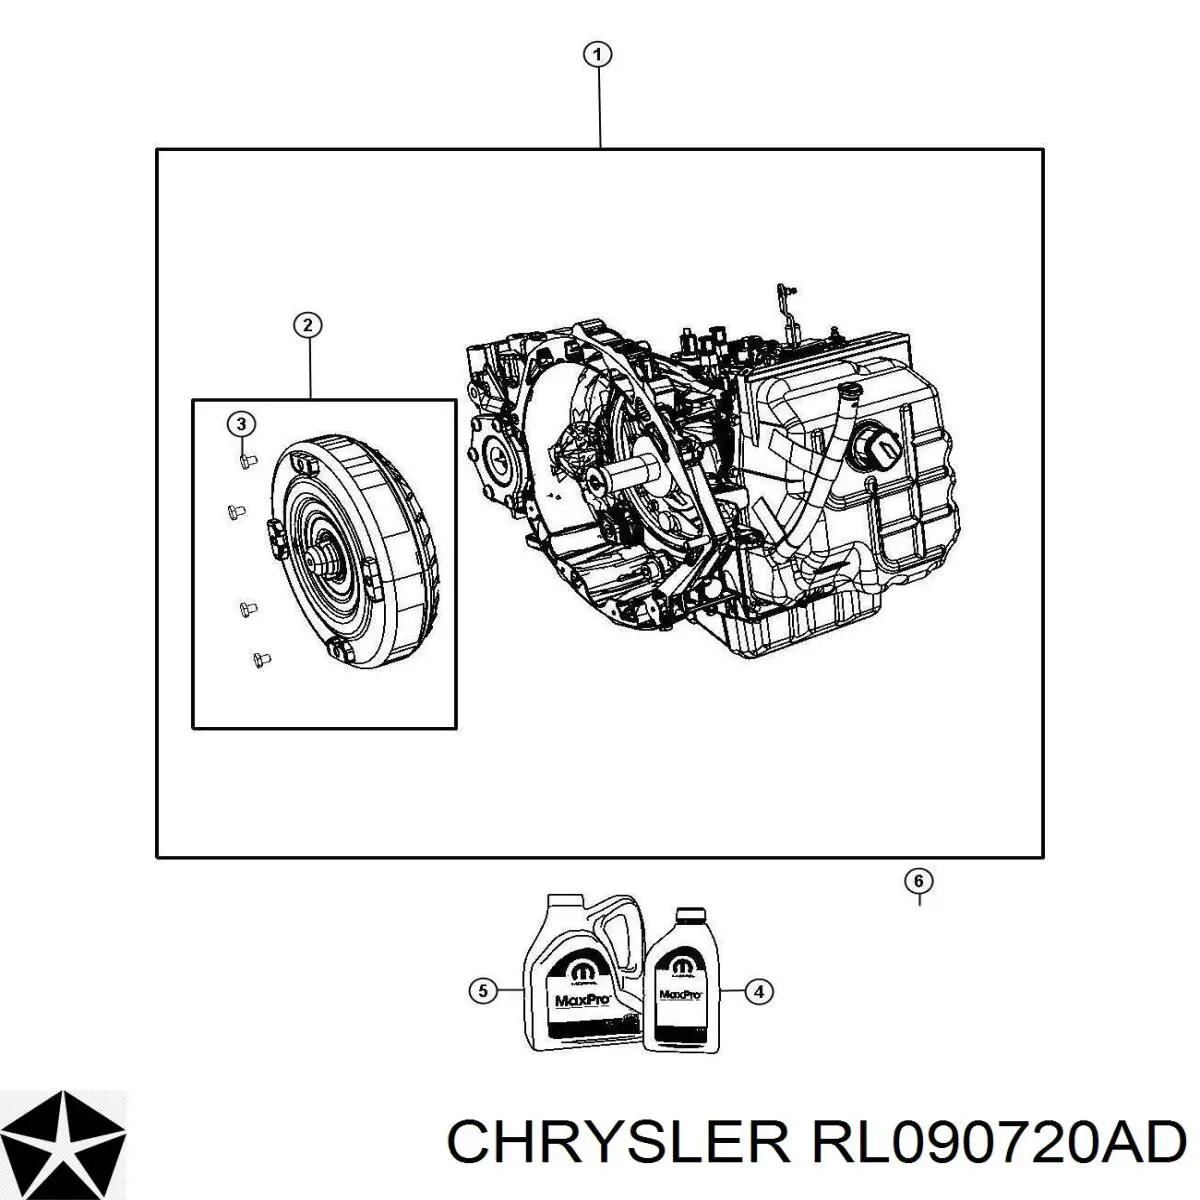 КПП в сборе (механическая коробка передач) на Chrysler 200 